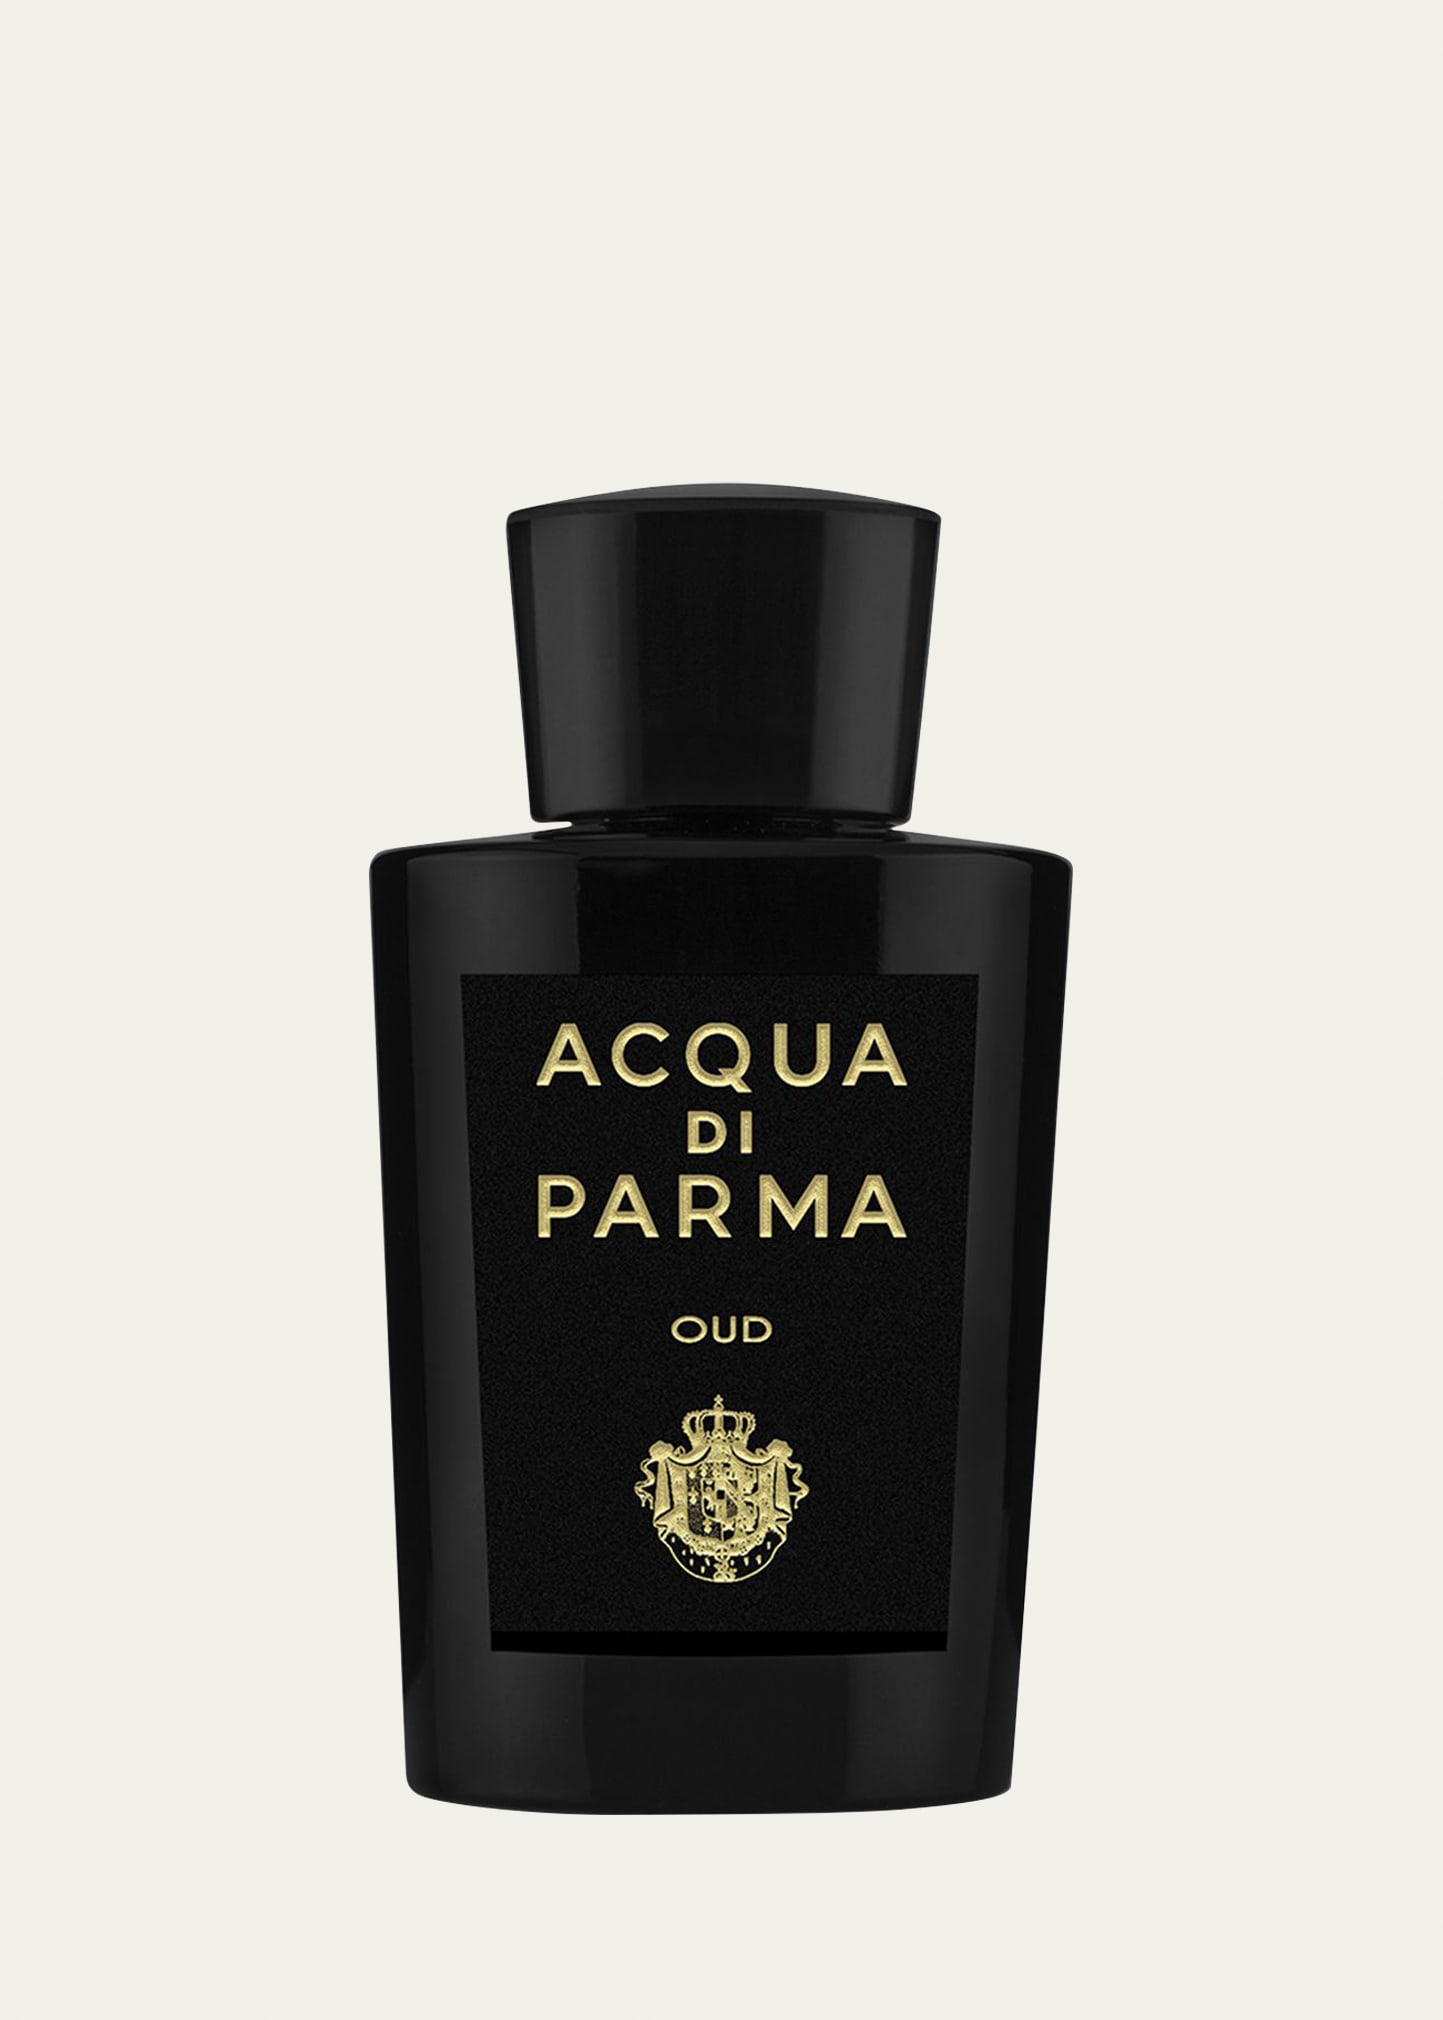 Acqua Di Parma Oud Eau De Parfum, 6 oz